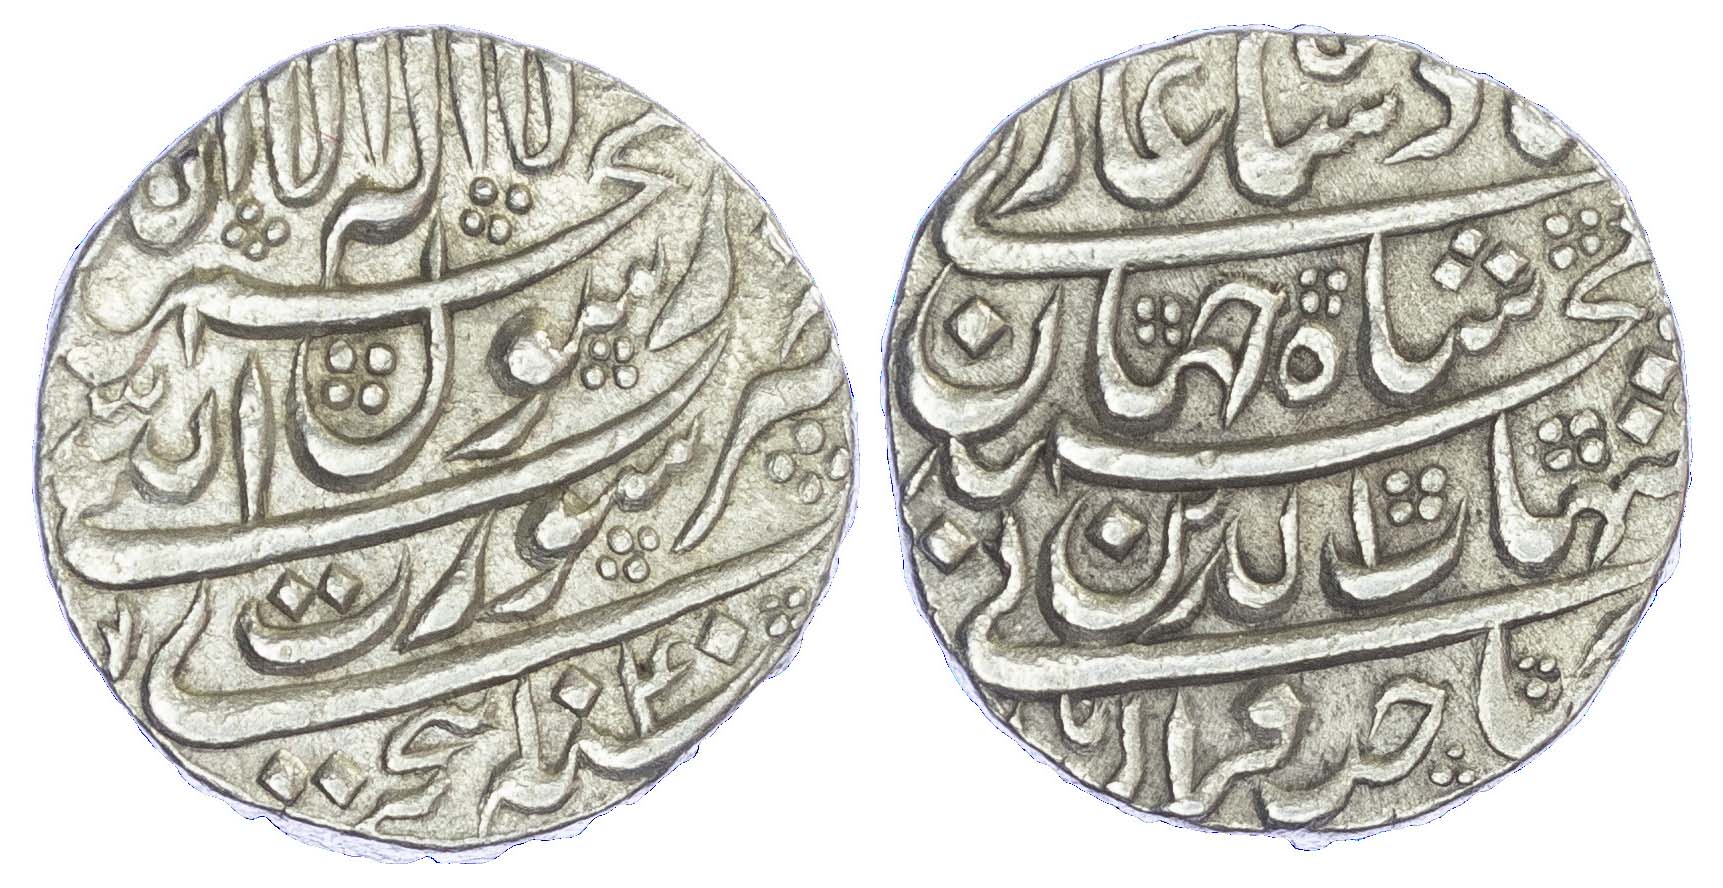 India, Mughal Empire, Shah Jahan (AH 1037-1068 / 1628-1658 AD), silver Rupee